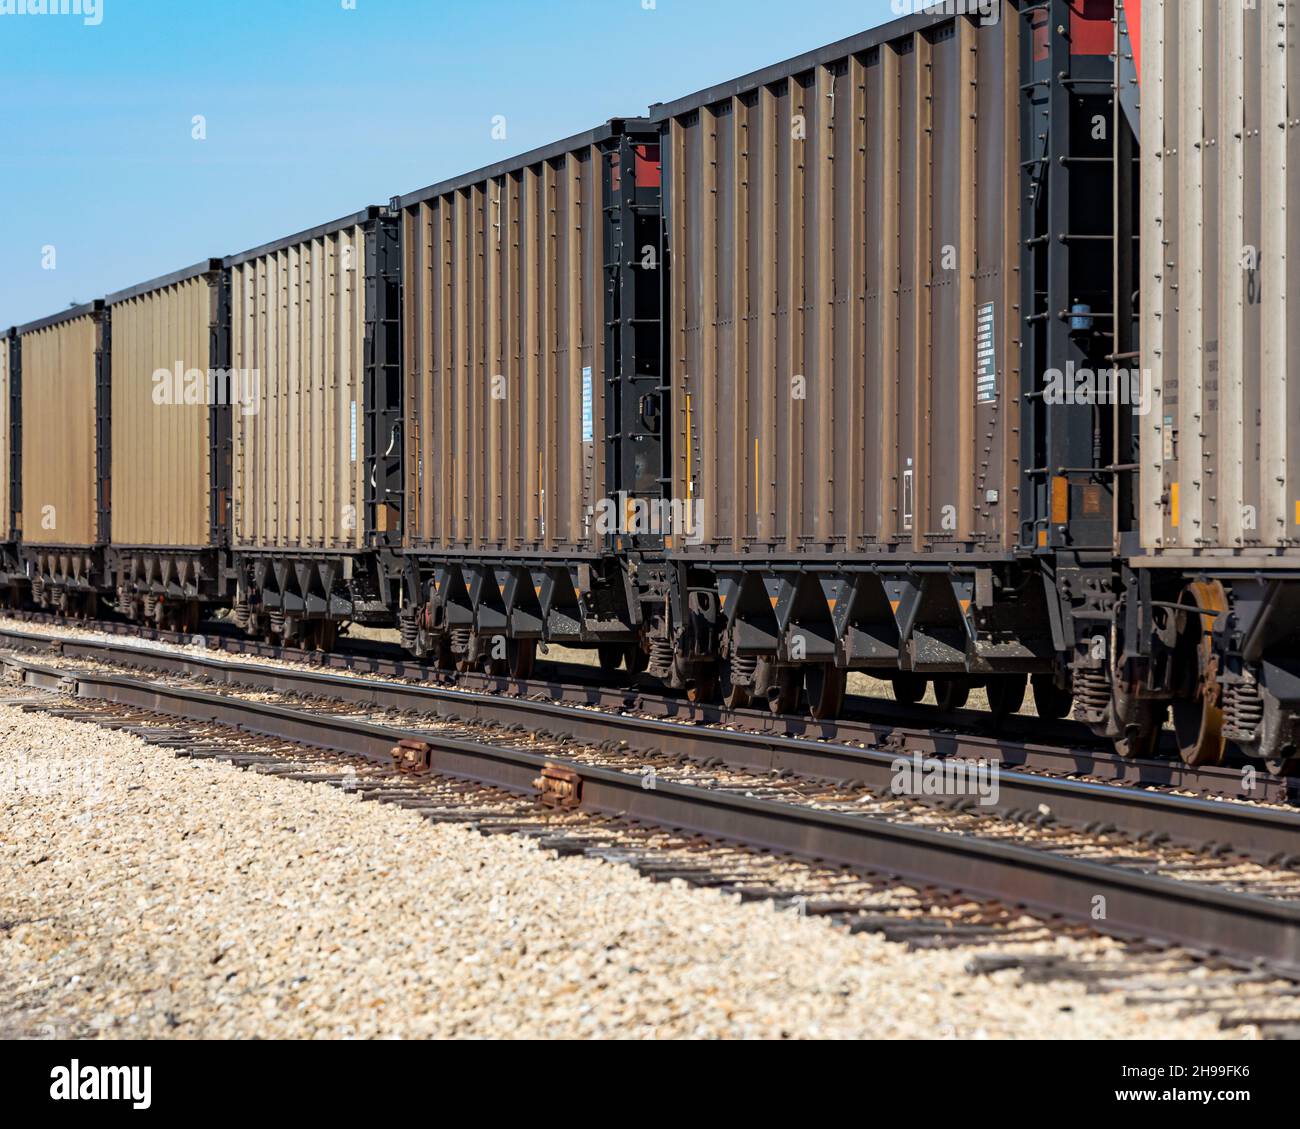 Vagones de tren de carga en vías férreas. Concepto de cadena de suministro, transporte ferroviario y envío. Foto de stock